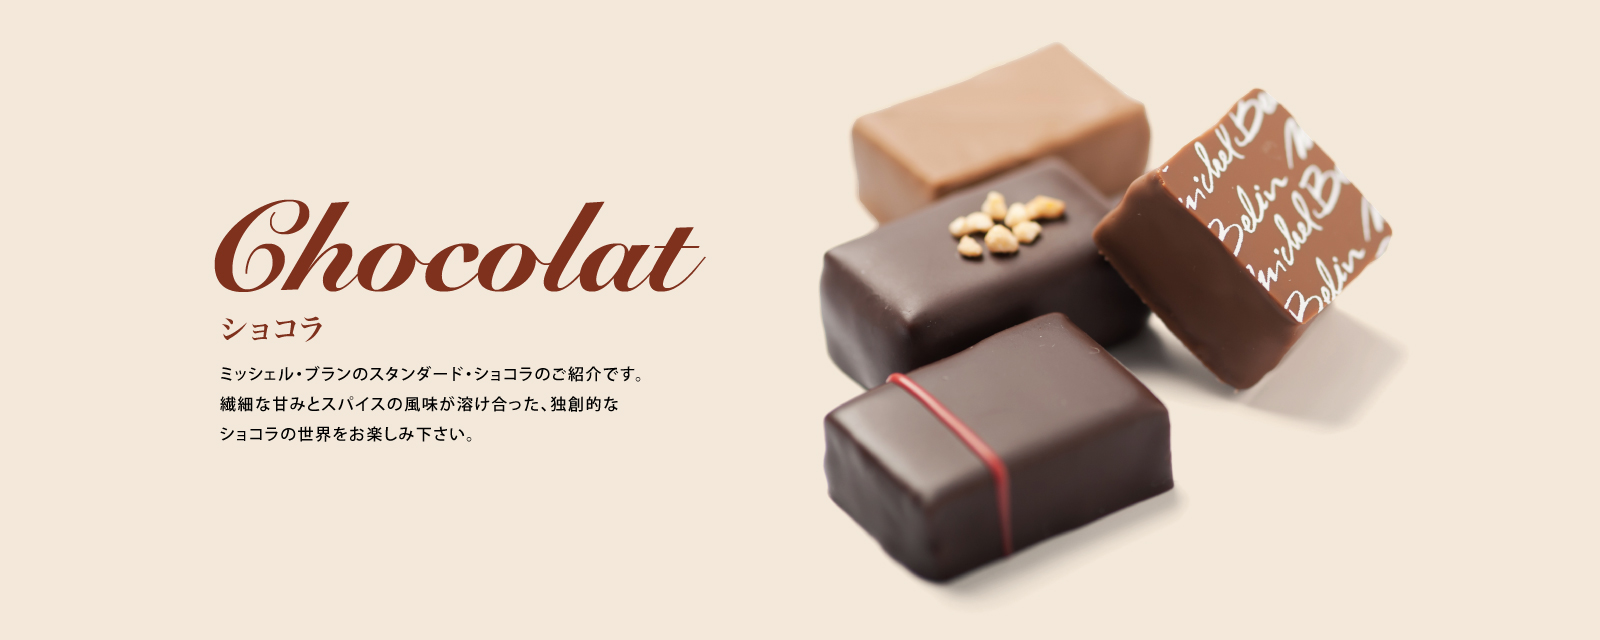 ショコラ [Chocolat]